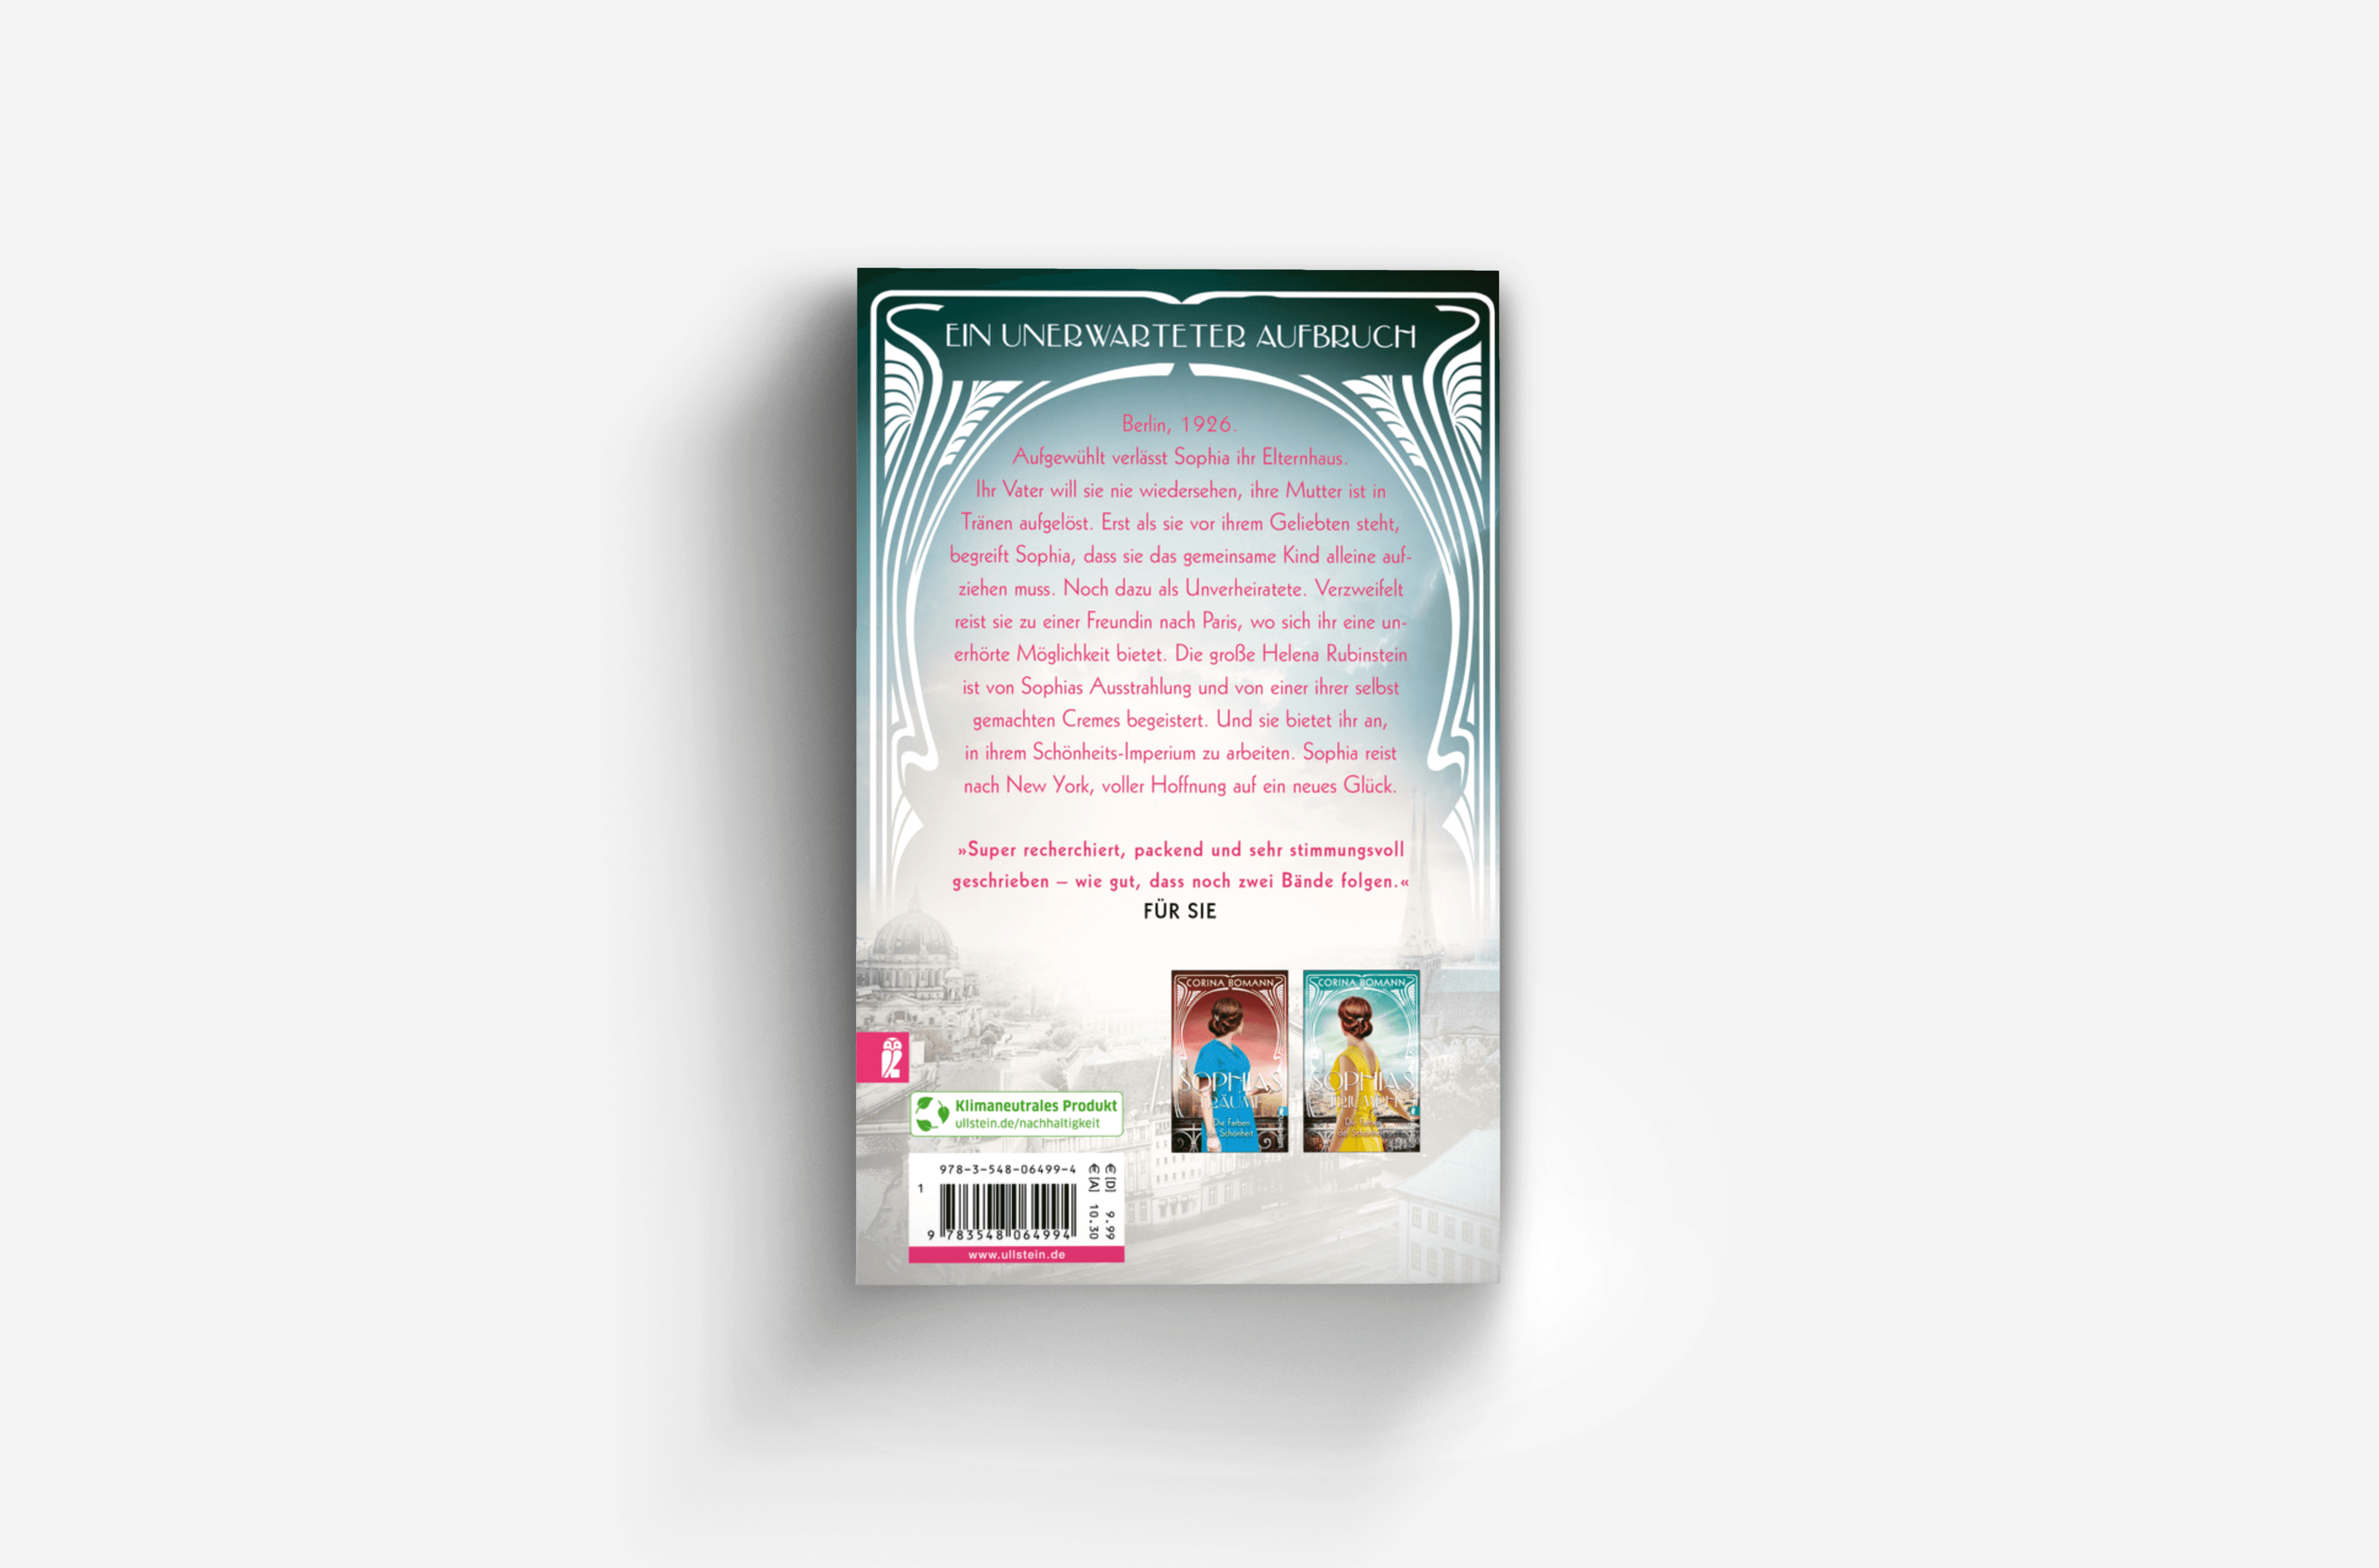 Buchcover von Die Farben der Schönheit – Sophias Hoffnung (Sophia 1)